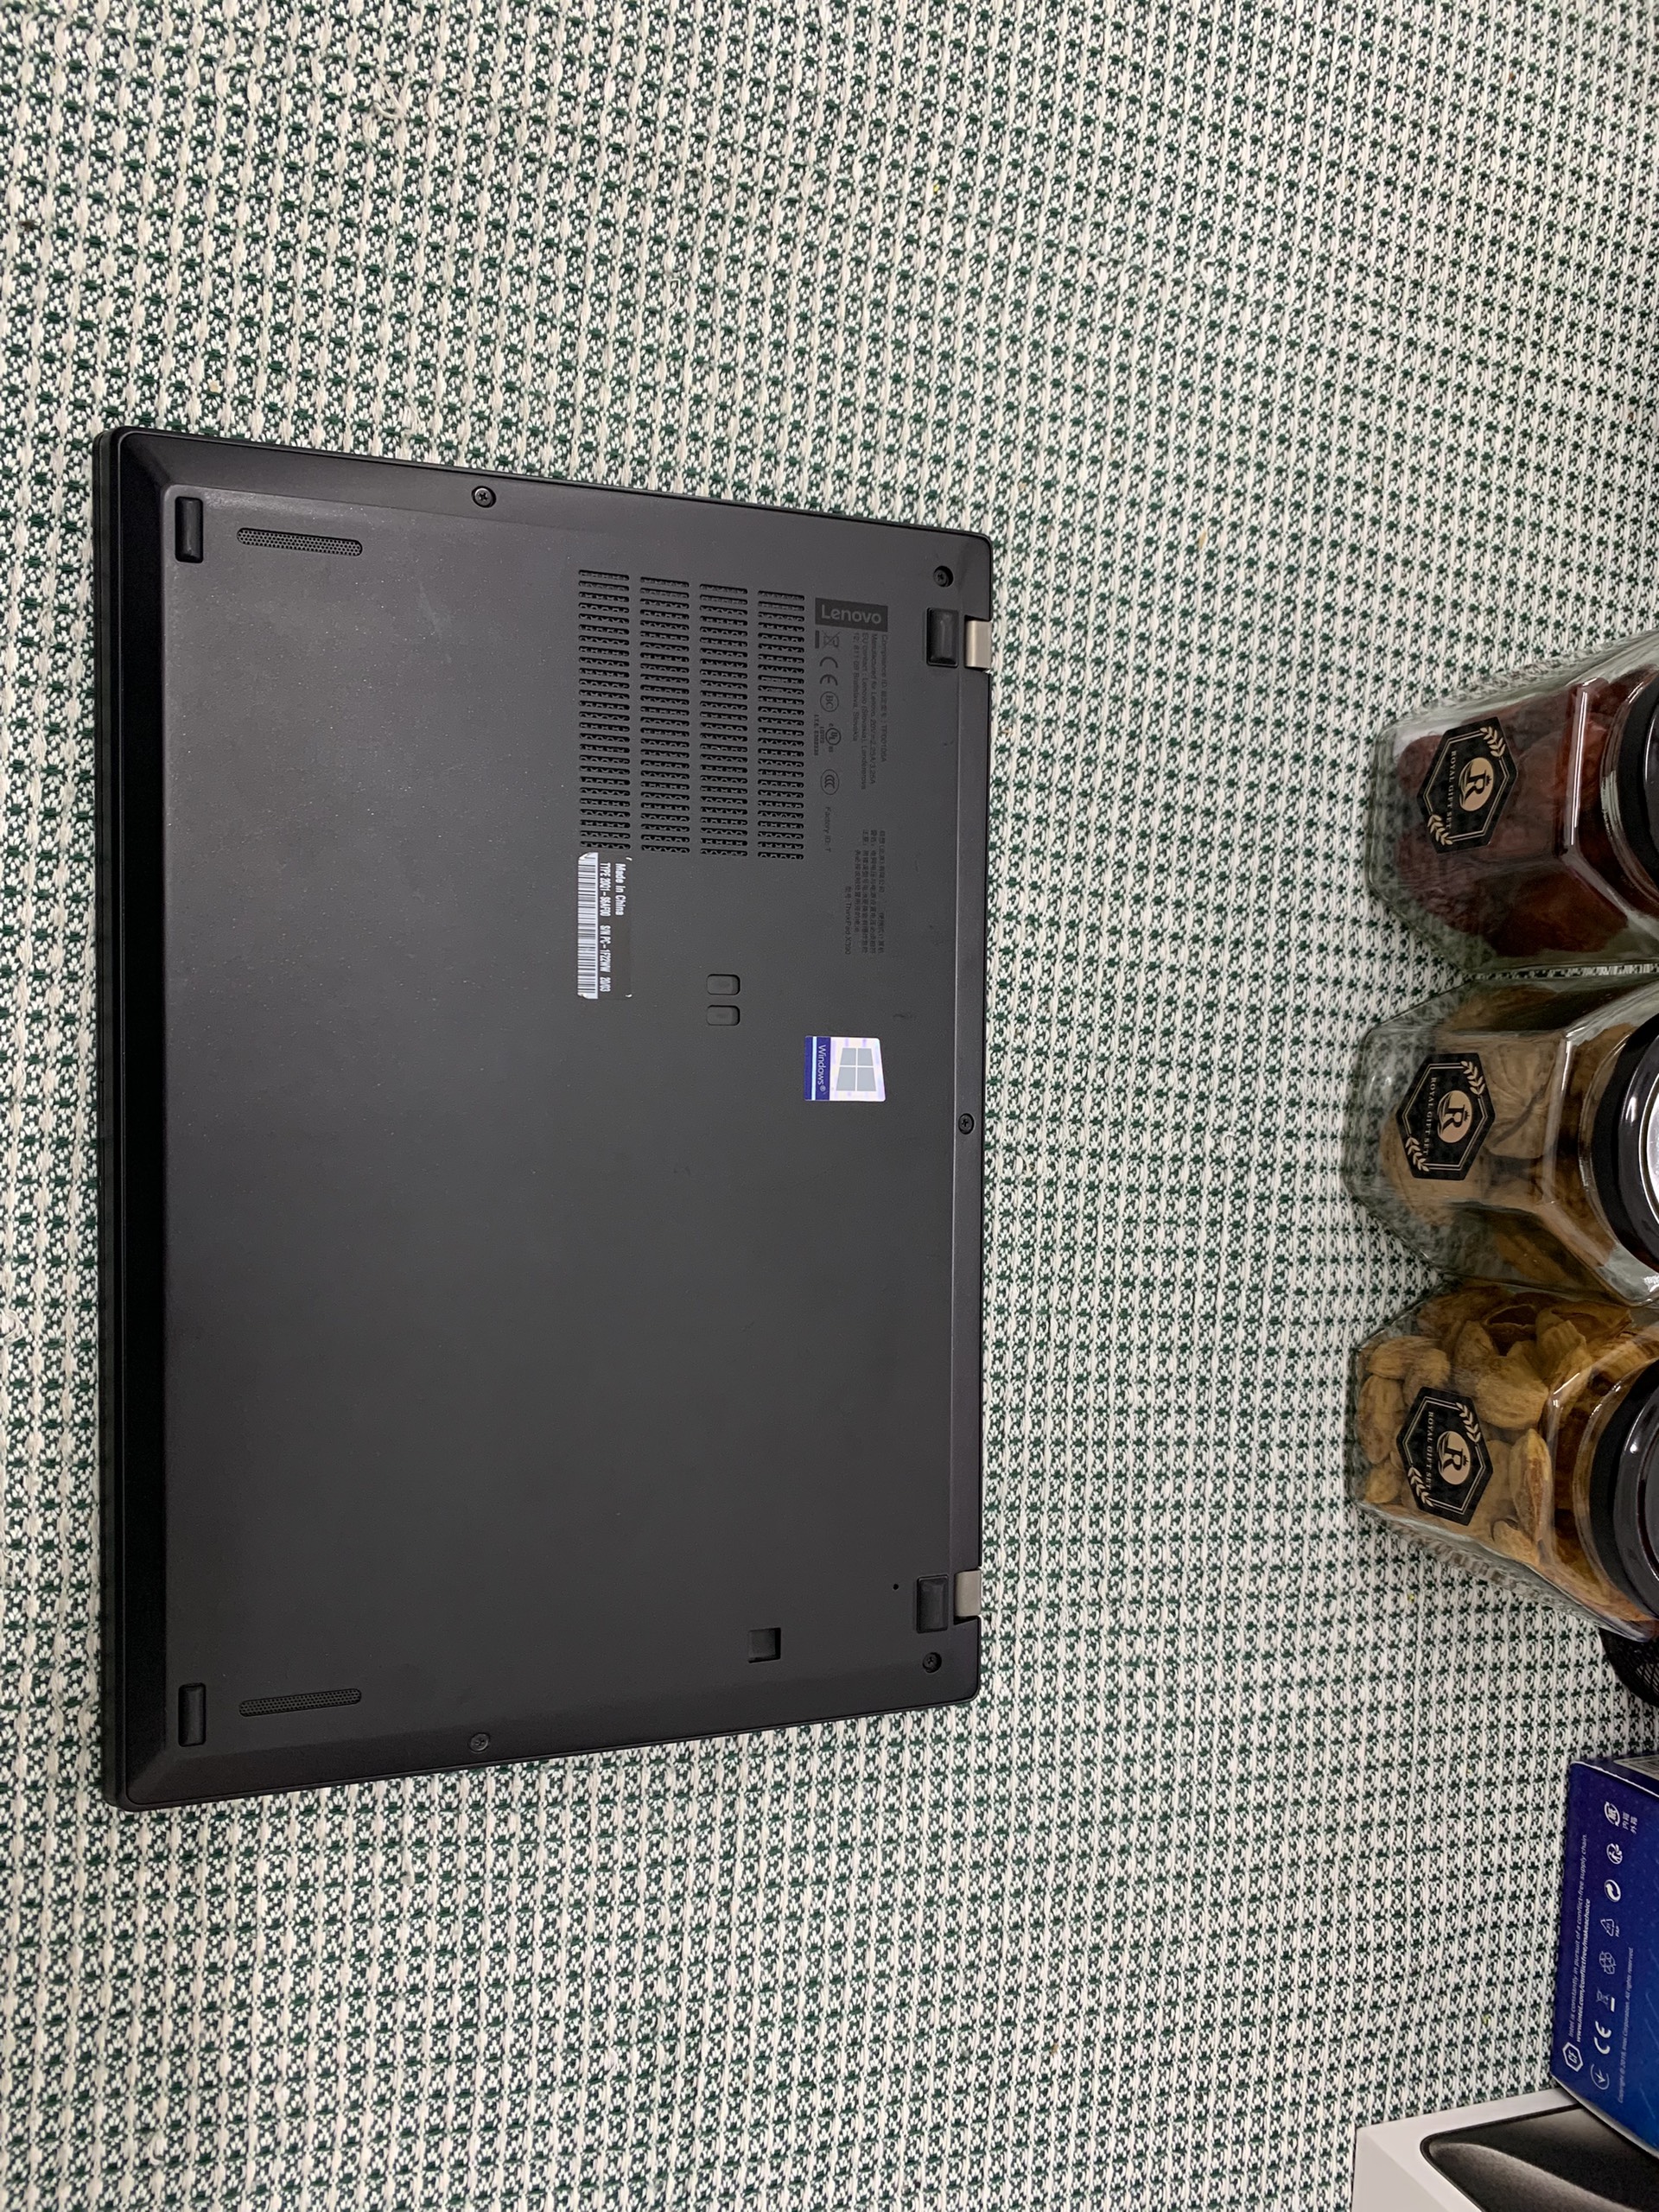 ThinkPad X390 JP